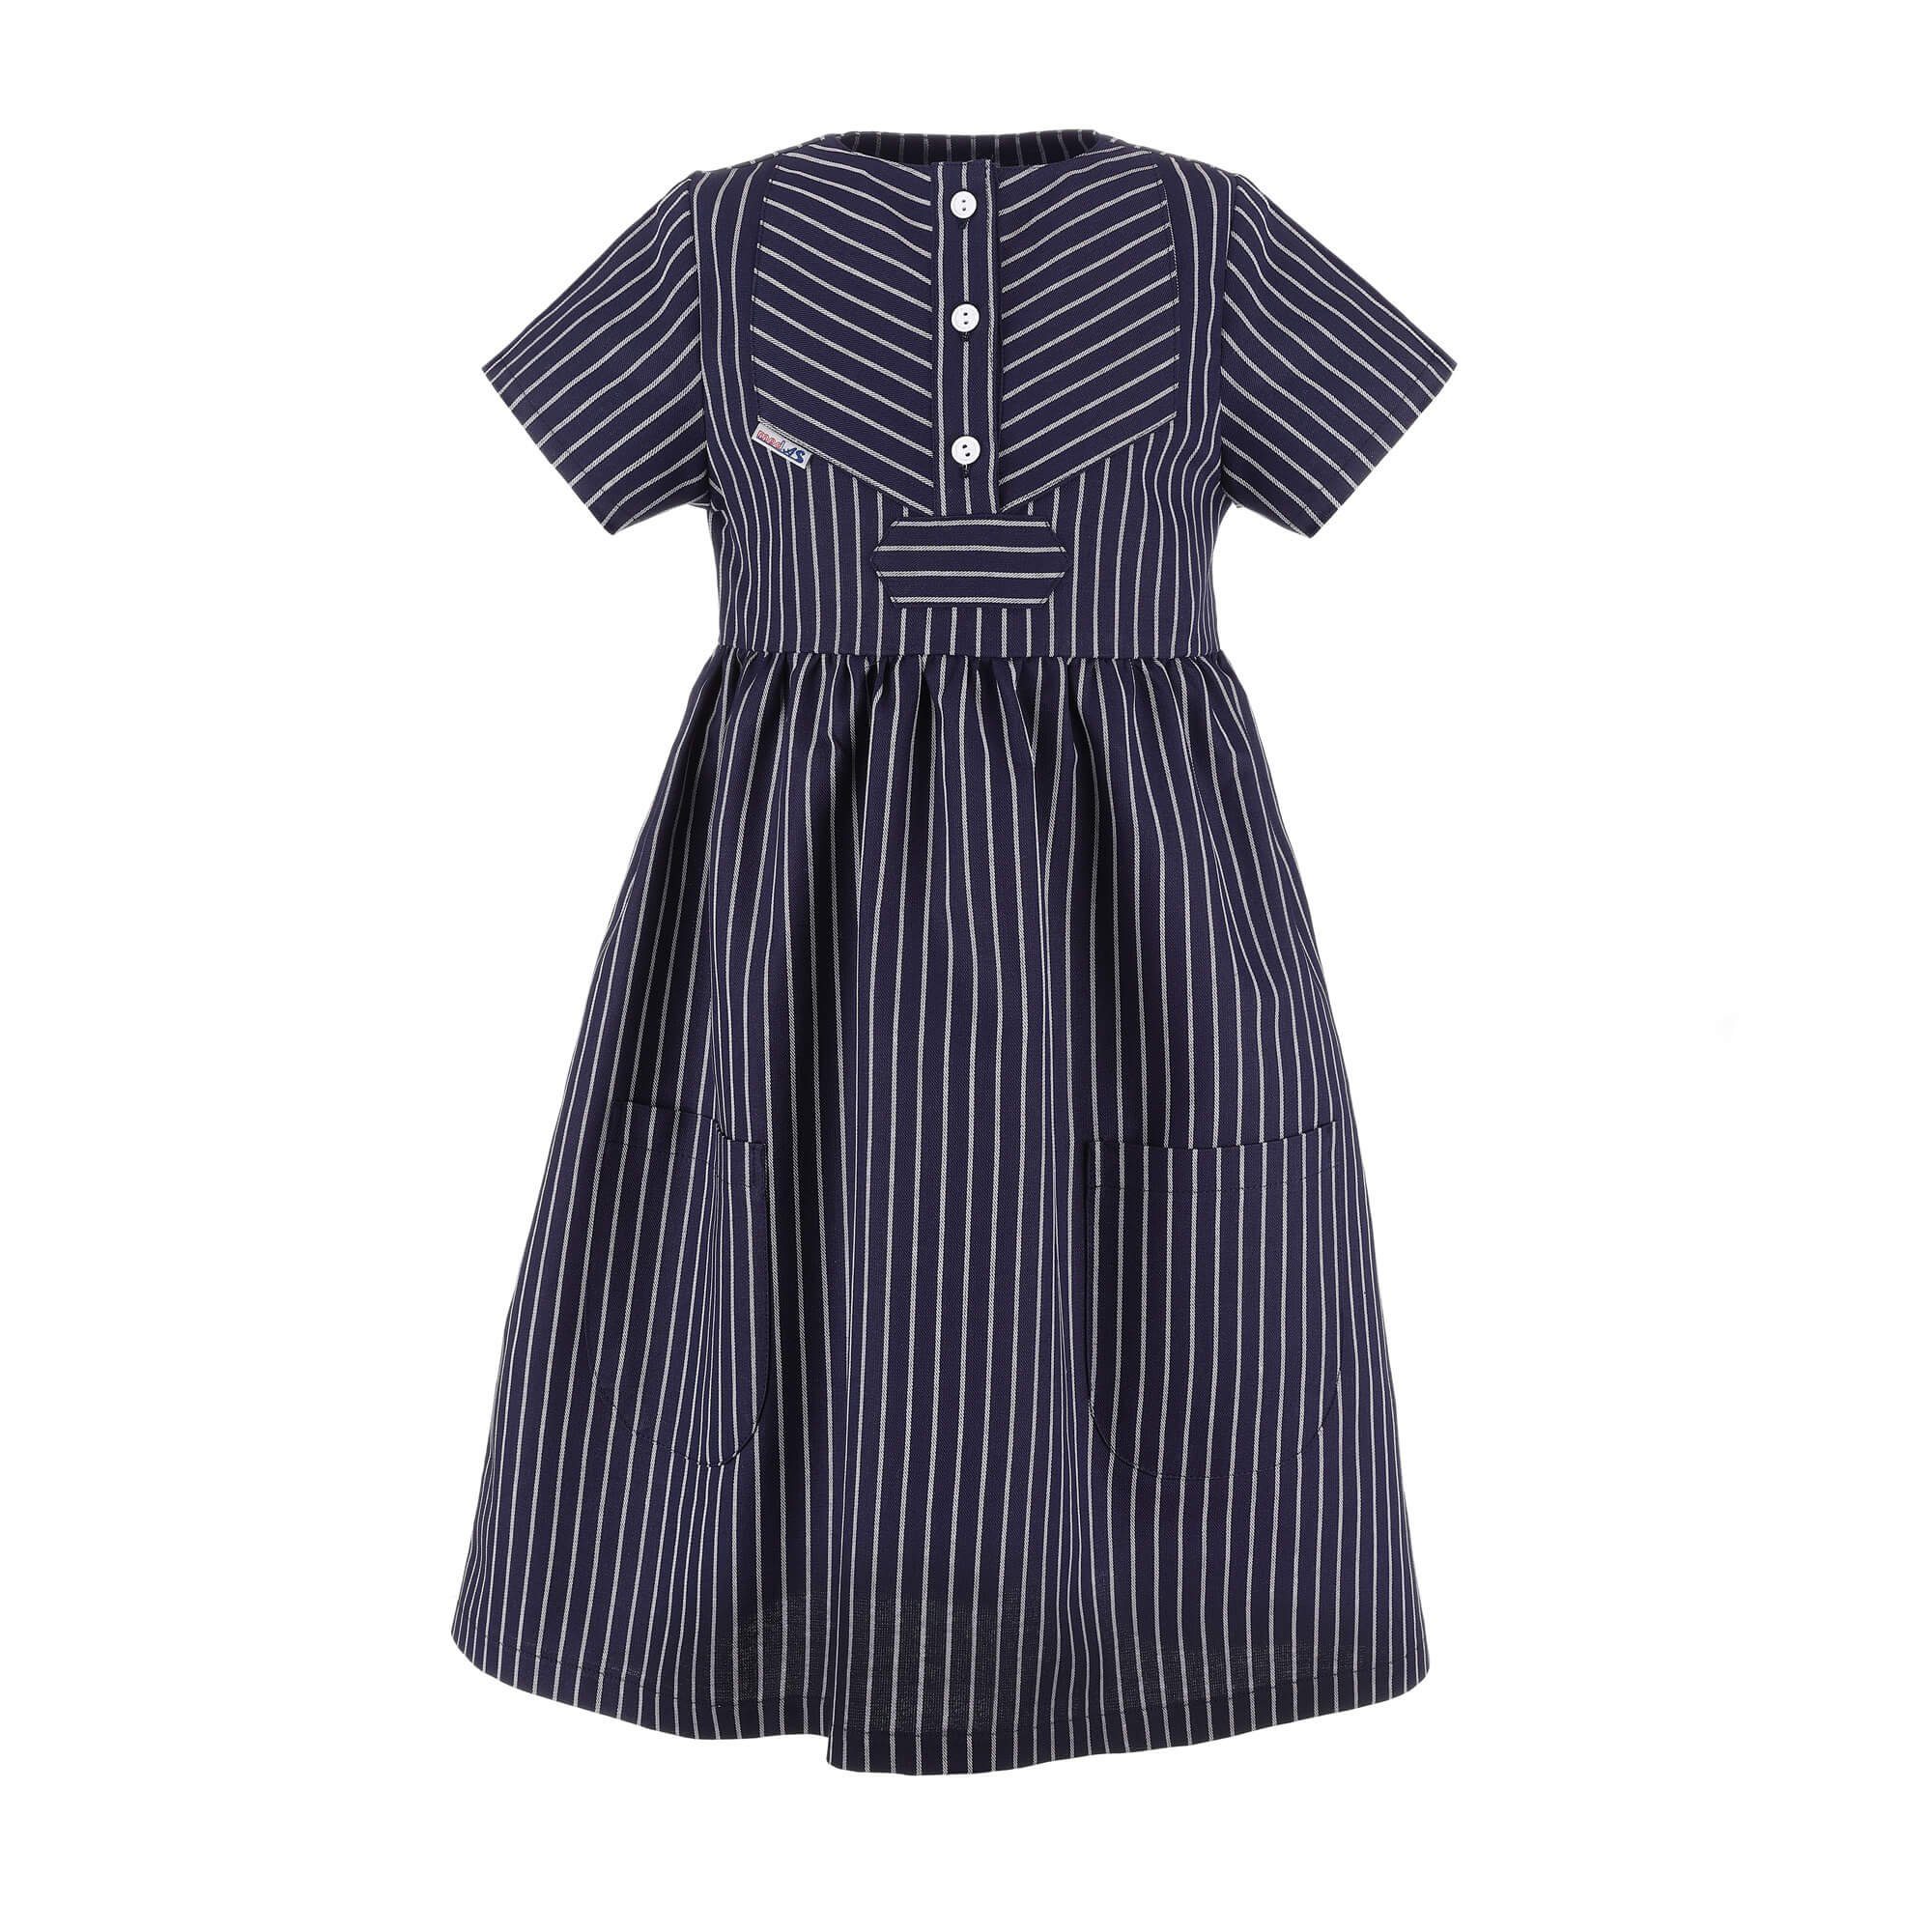 modAS Finkenwerder-Stil Sommerkleid Blau Klassisch Fischerkleid breiter (10) Streifen - Kinder Kleid Gestreiftes